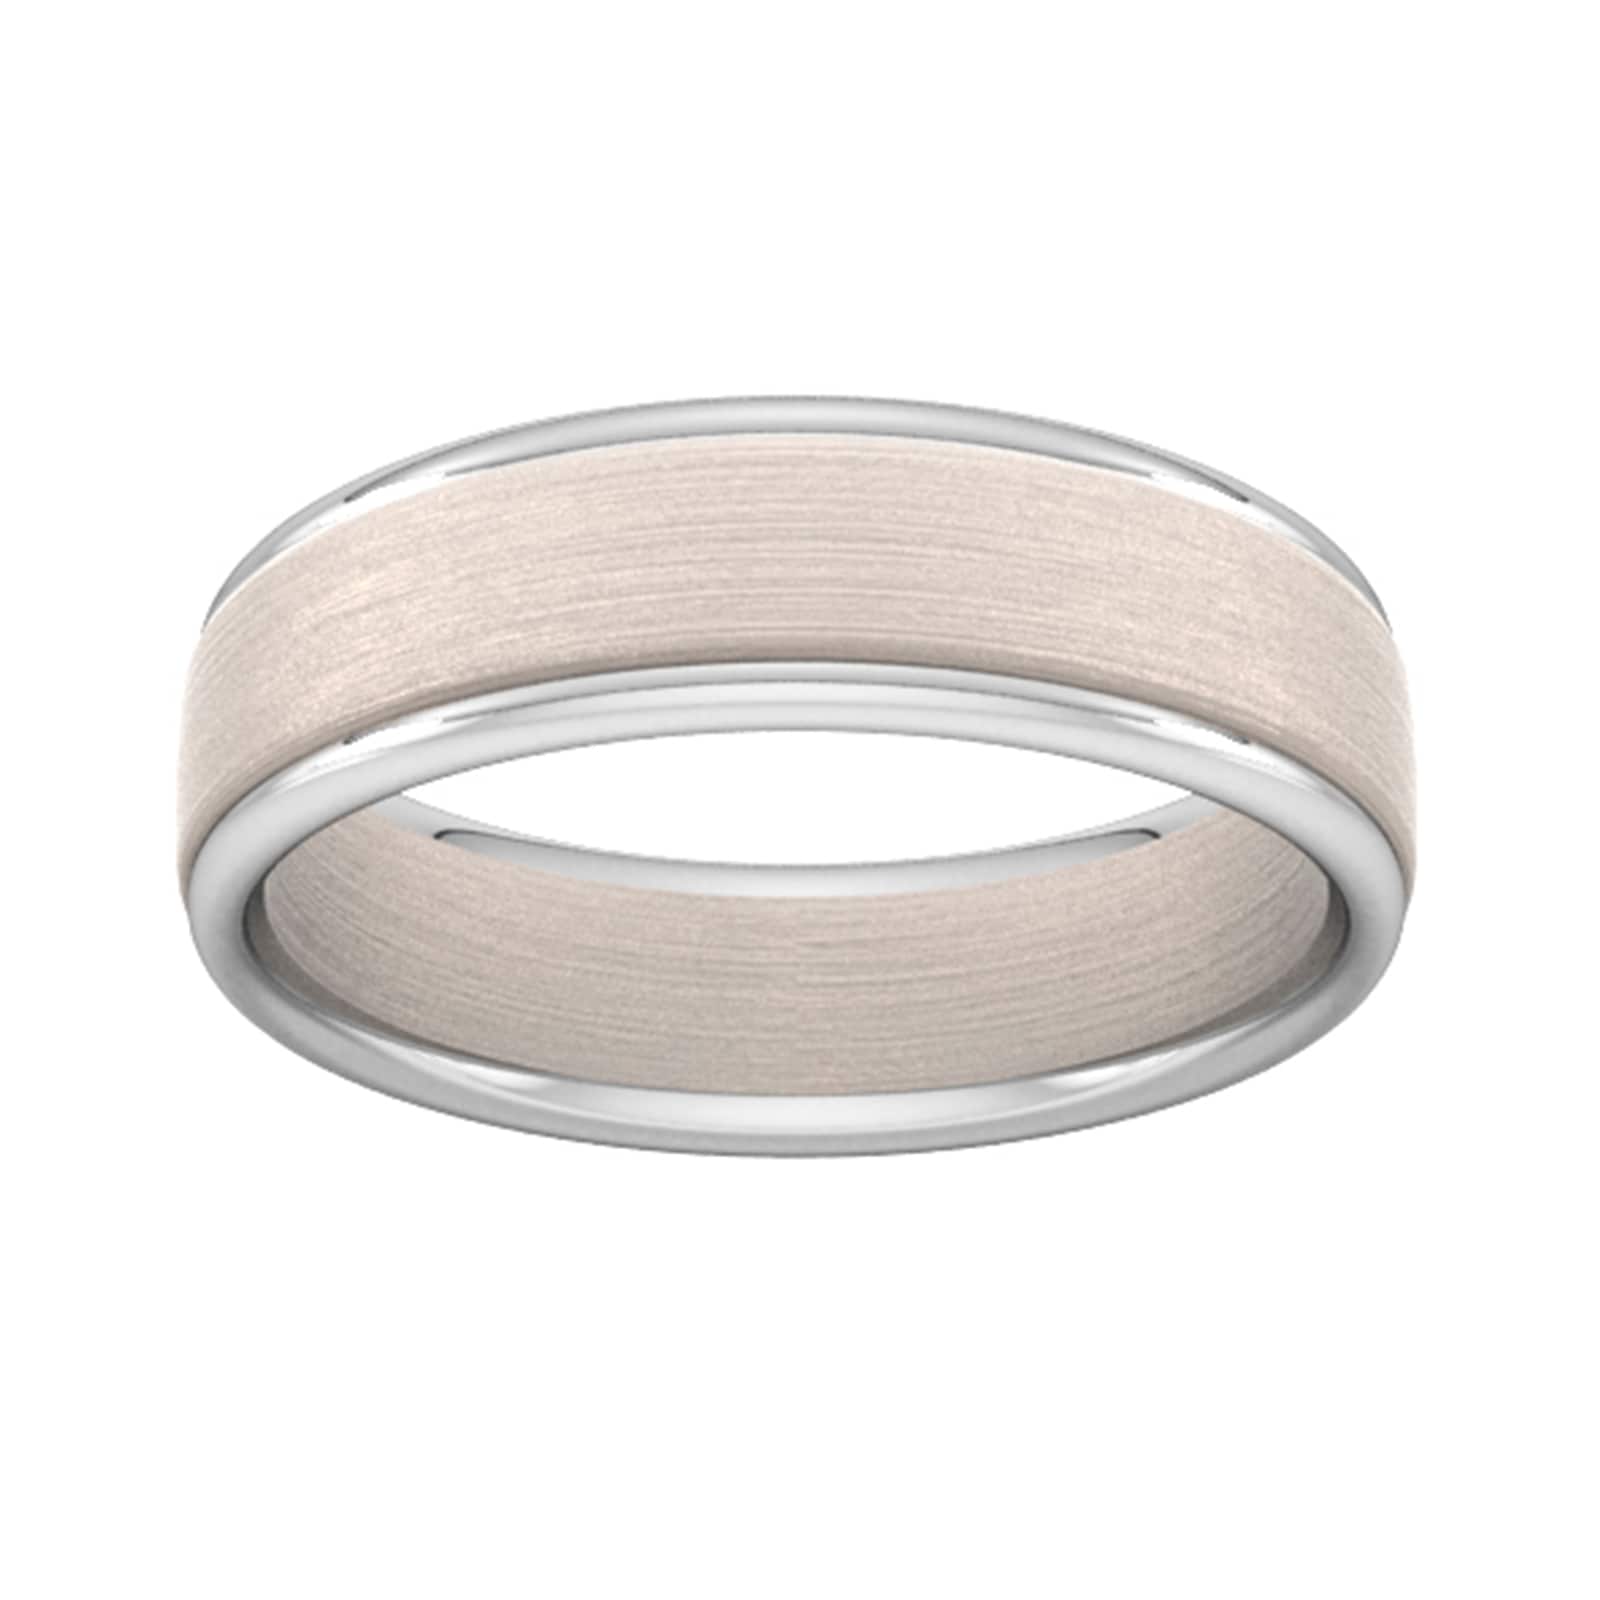 5mm Wedding Ring In 18 Carat Rose & White Gold - Ring Size Q